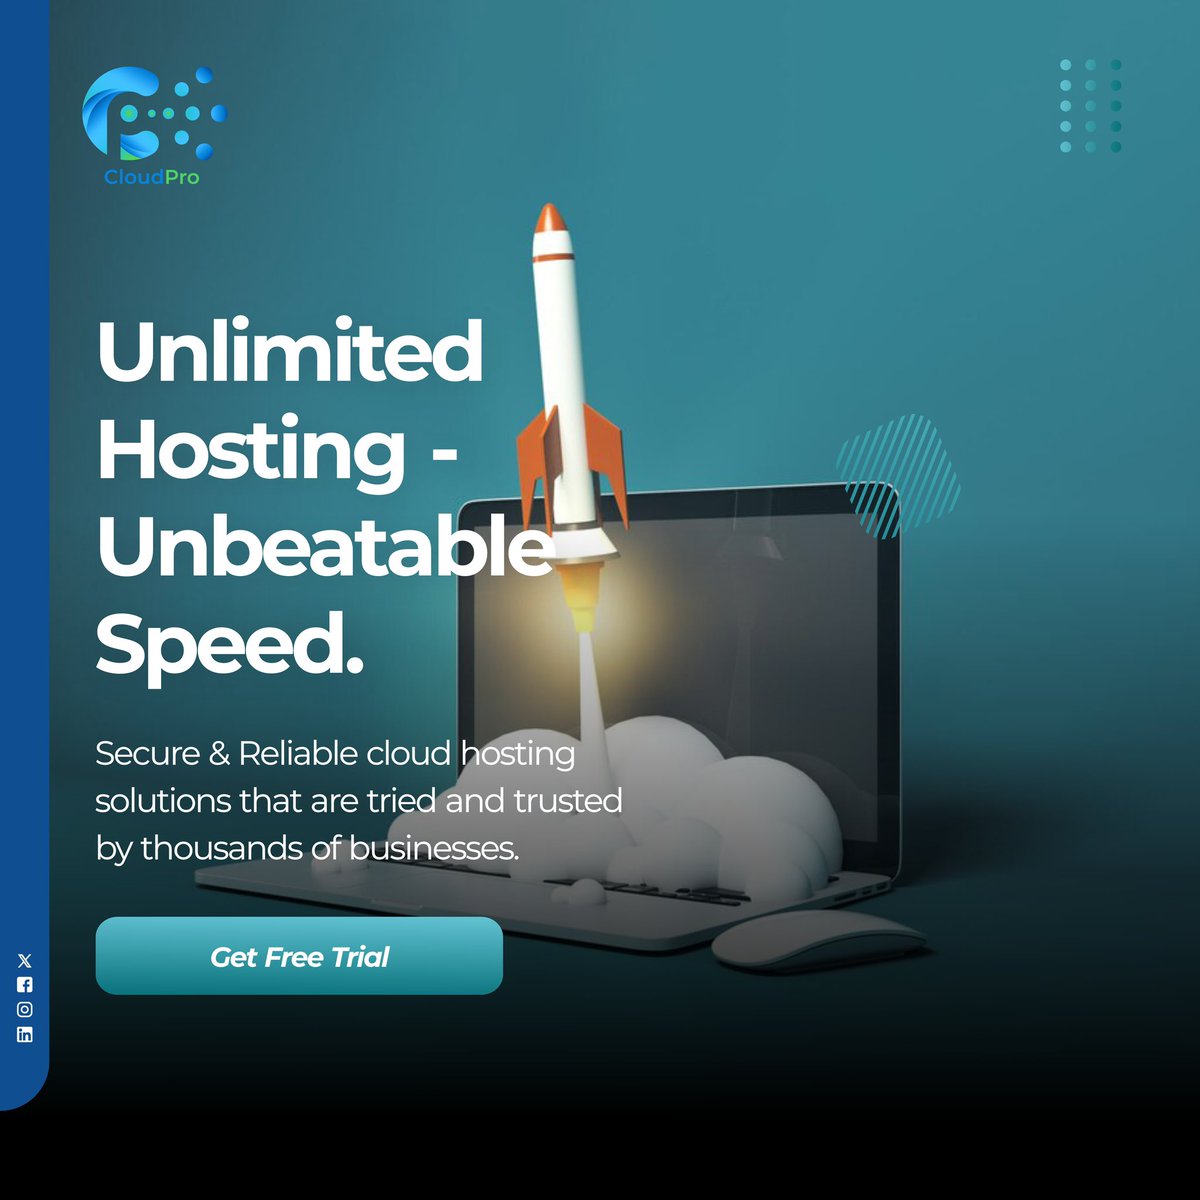 Visit: cloudpro.ng 
#hostingplans #webhost